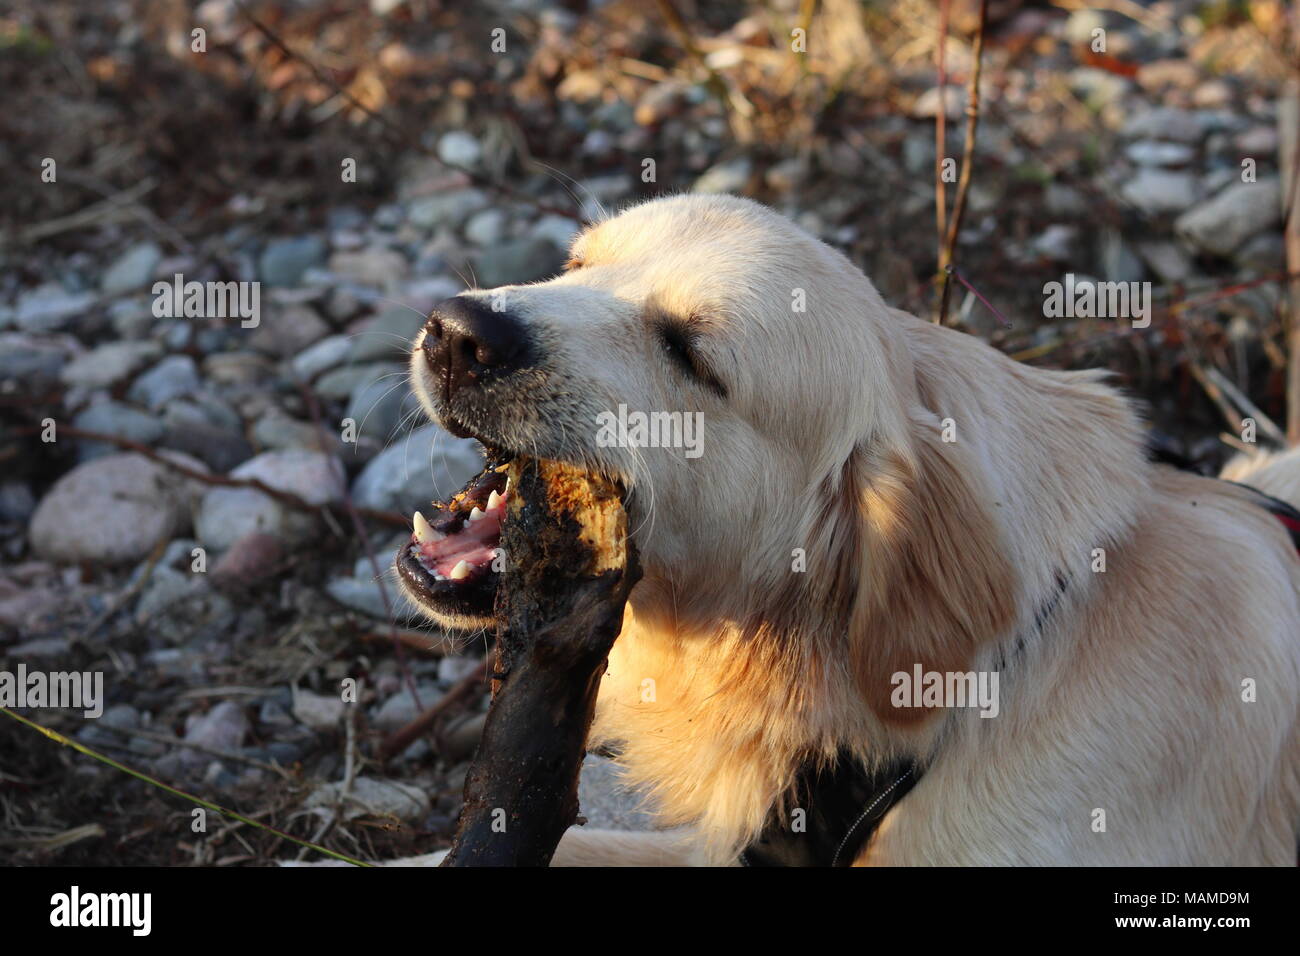 Cane, Golden Retriever masticare un bastone, gli occhi chiusi, la natura, la luce solare sulla pelliccia, ritratto, sfondo sfocato Foto Stock